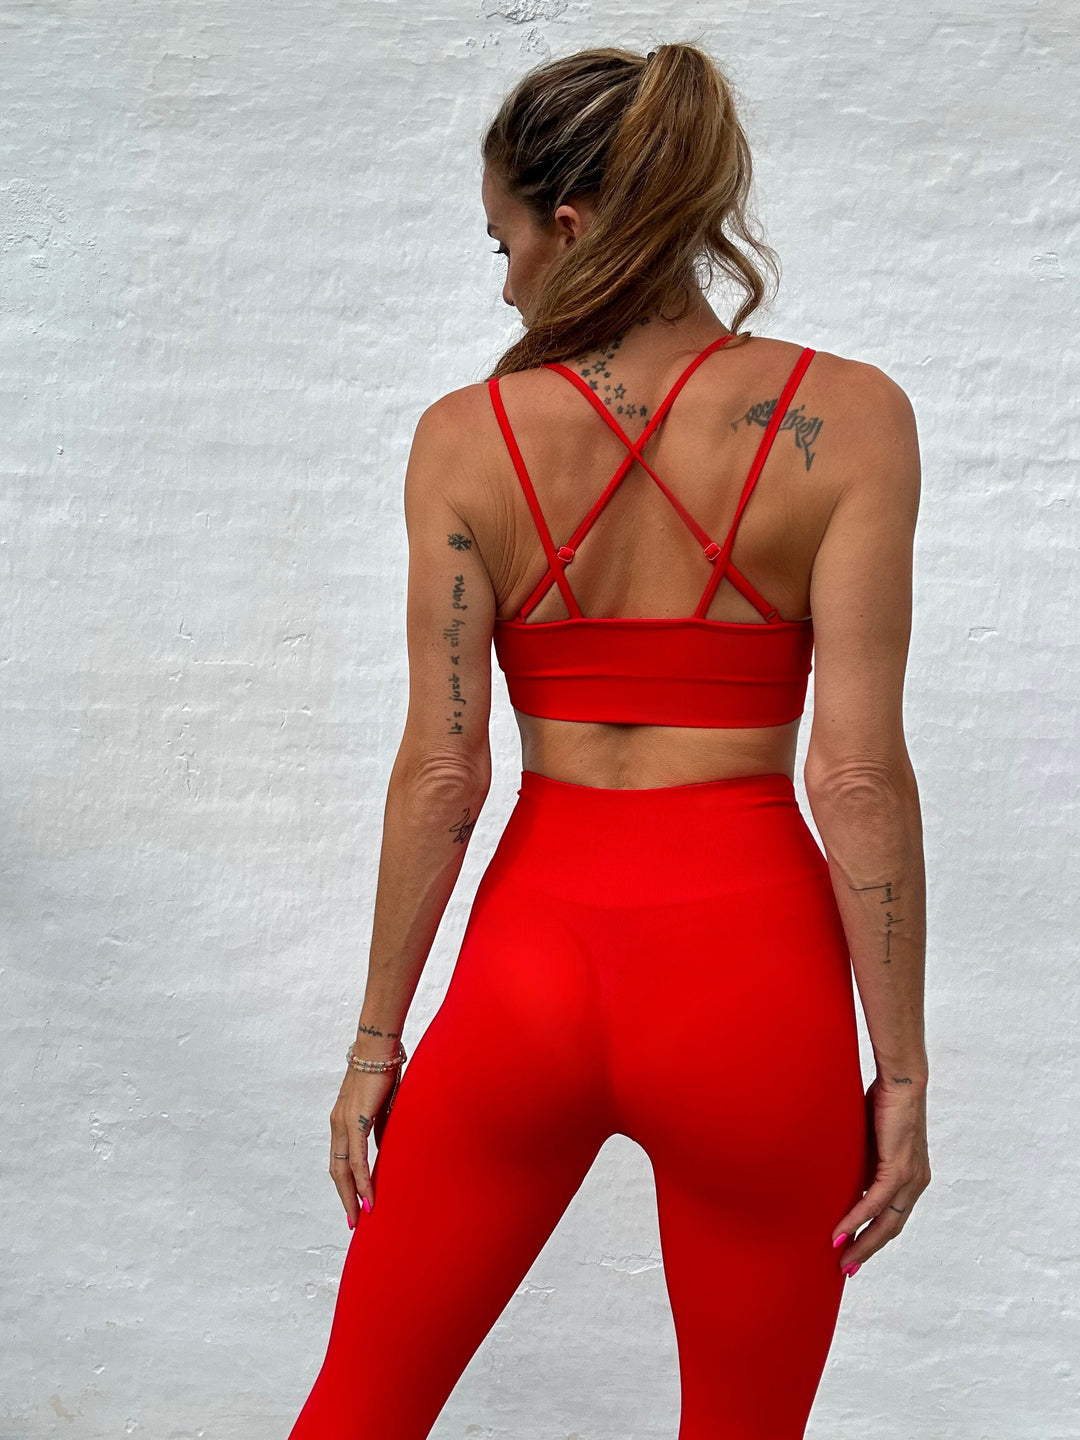 Sassy Copenhagen fitness Sassy Copenhagen - Yoga sæt med justerbare kryds stropper - Fitness shape sæt - rød